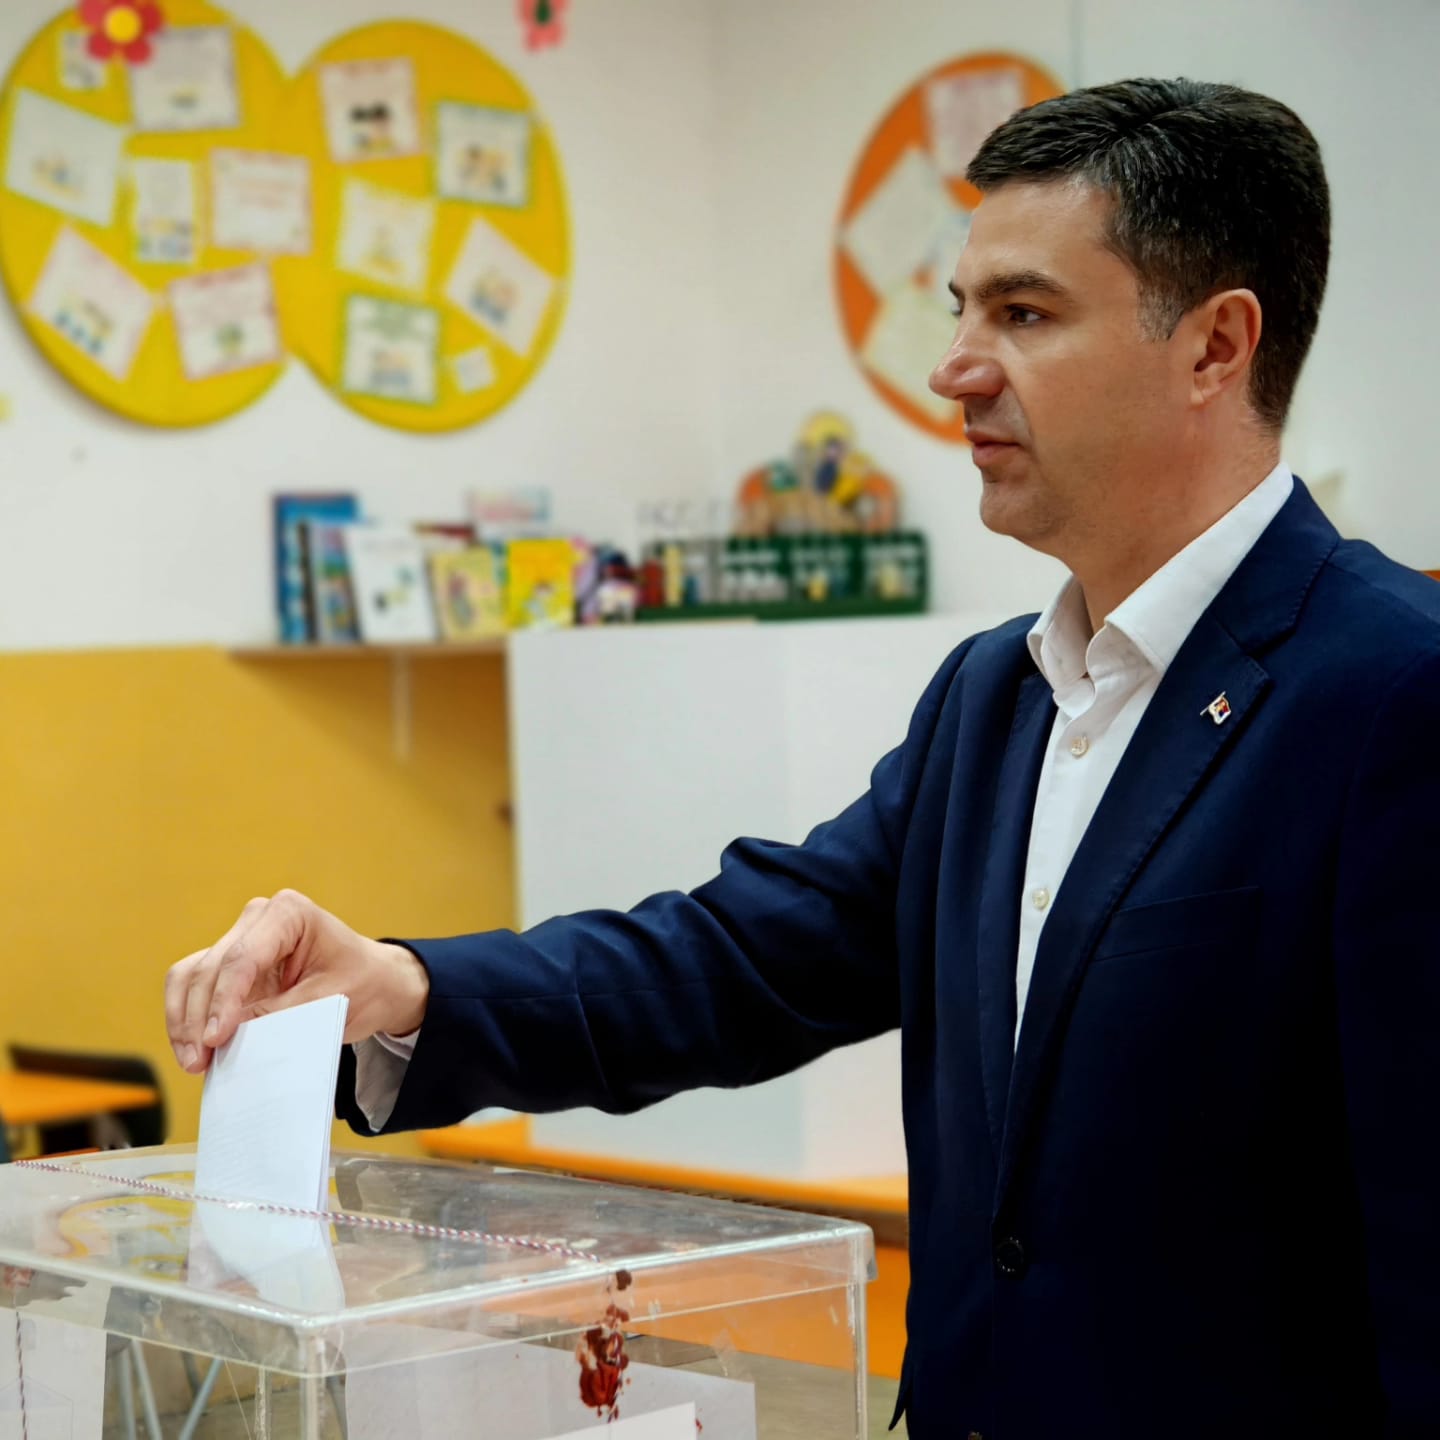 Lokalni i beogradski izbori: U Nišu i SNS i opozicija proglasili pobedu, u Beogradu SNS sama može da formira vlast (FOTO, VIDEO) 9